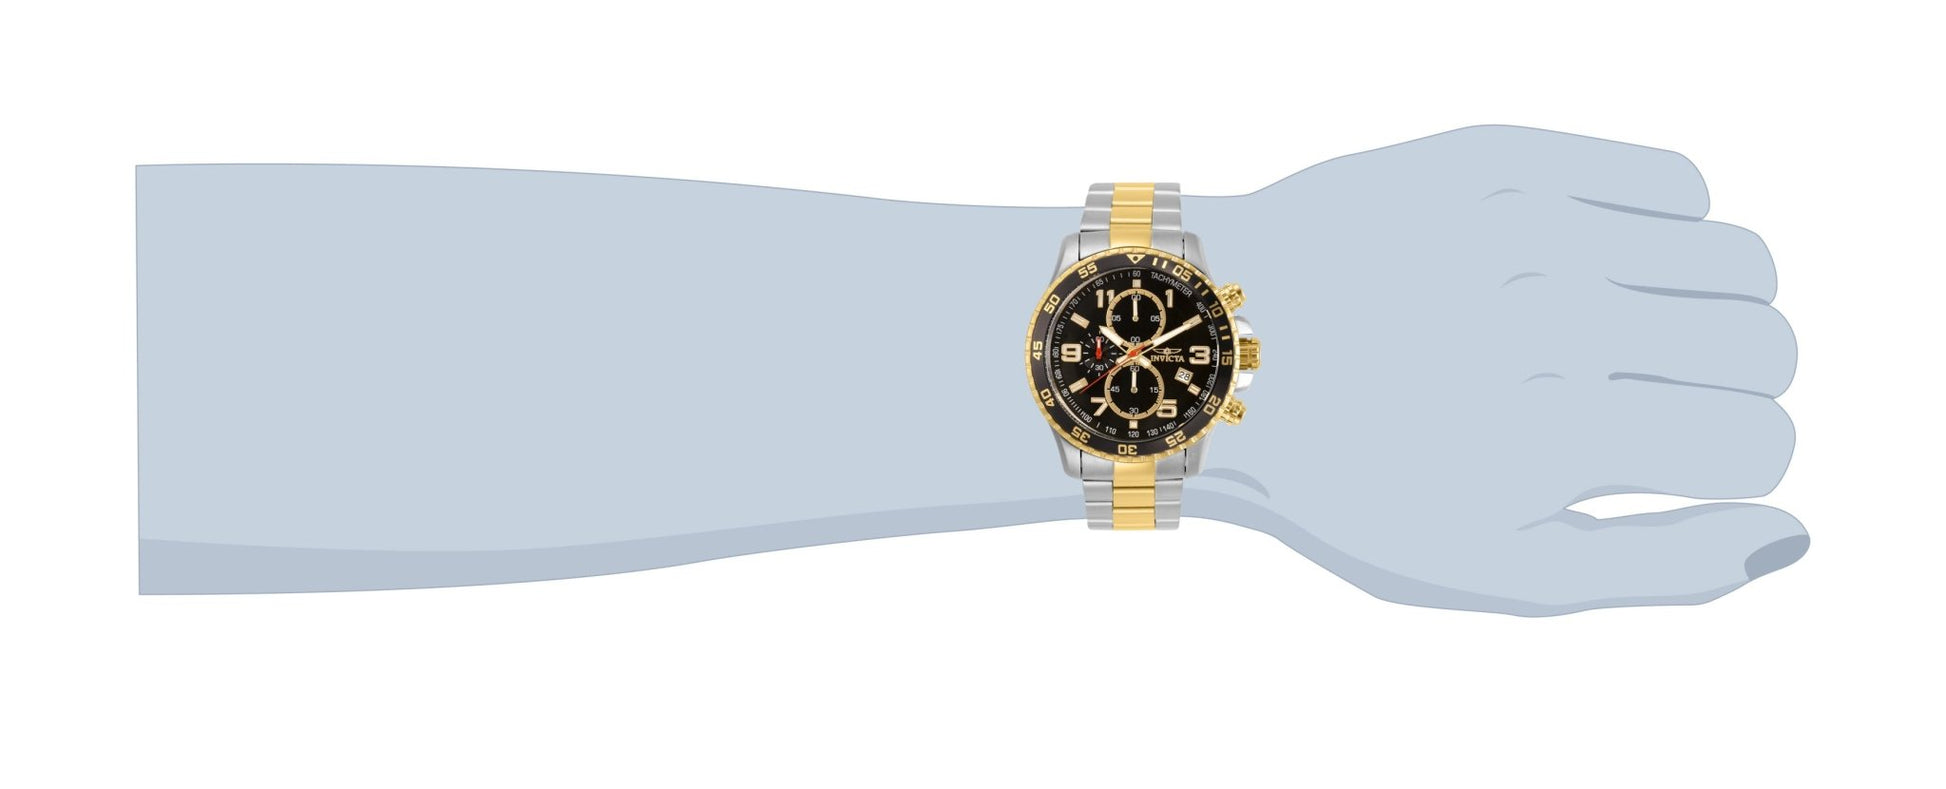 Invicta Specialty 14876 Men's Quartz Watch worn on wrist